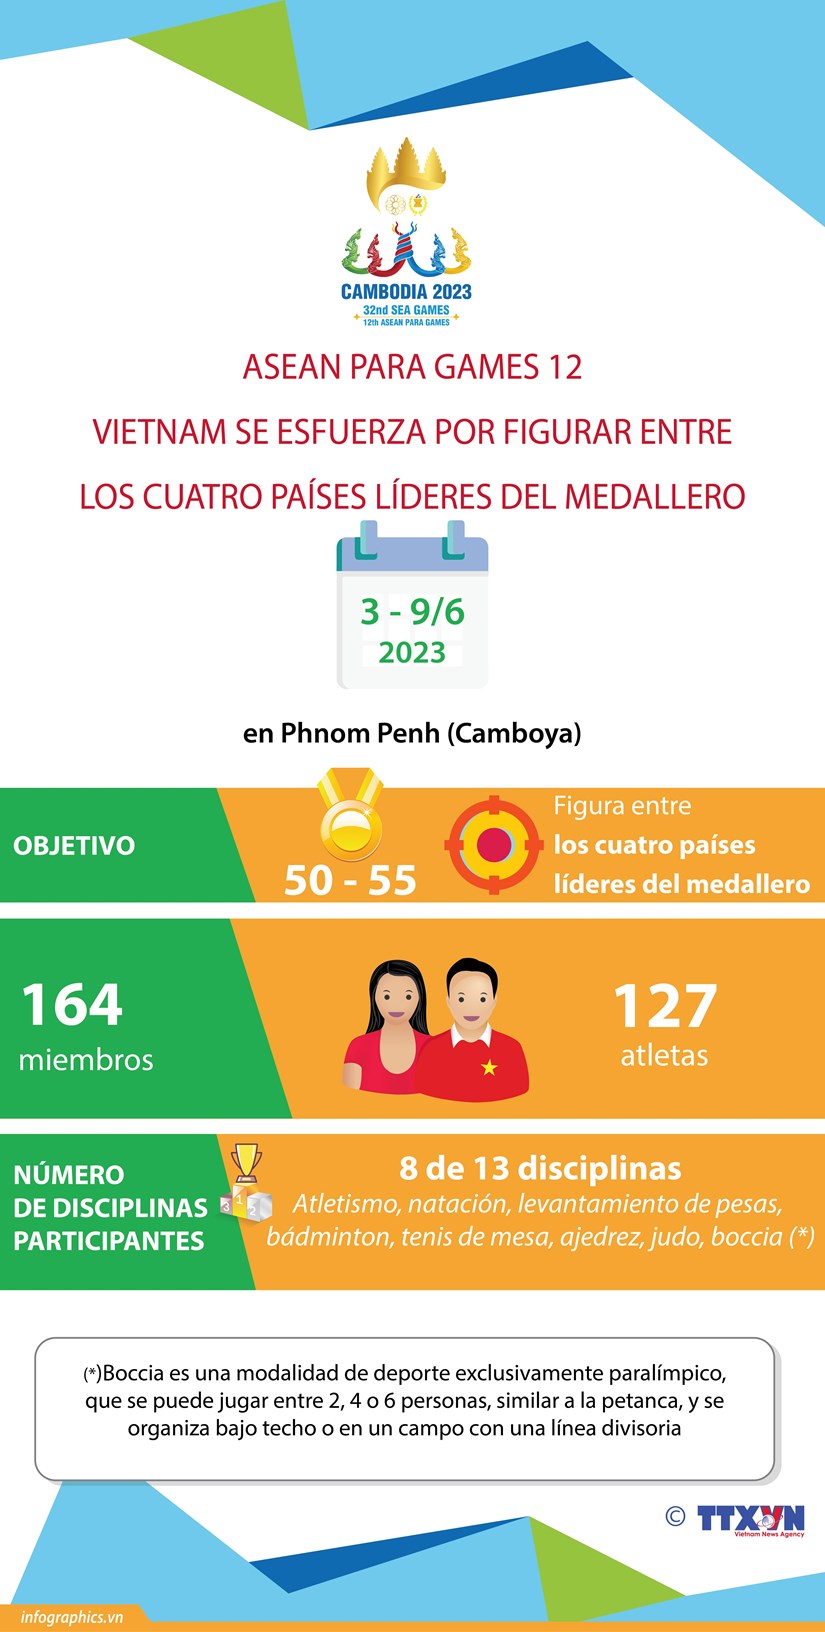 ASEAN Paragames 12: Vietnam por figurar entre los cuatro paises lideres del medallero hinh anh 1